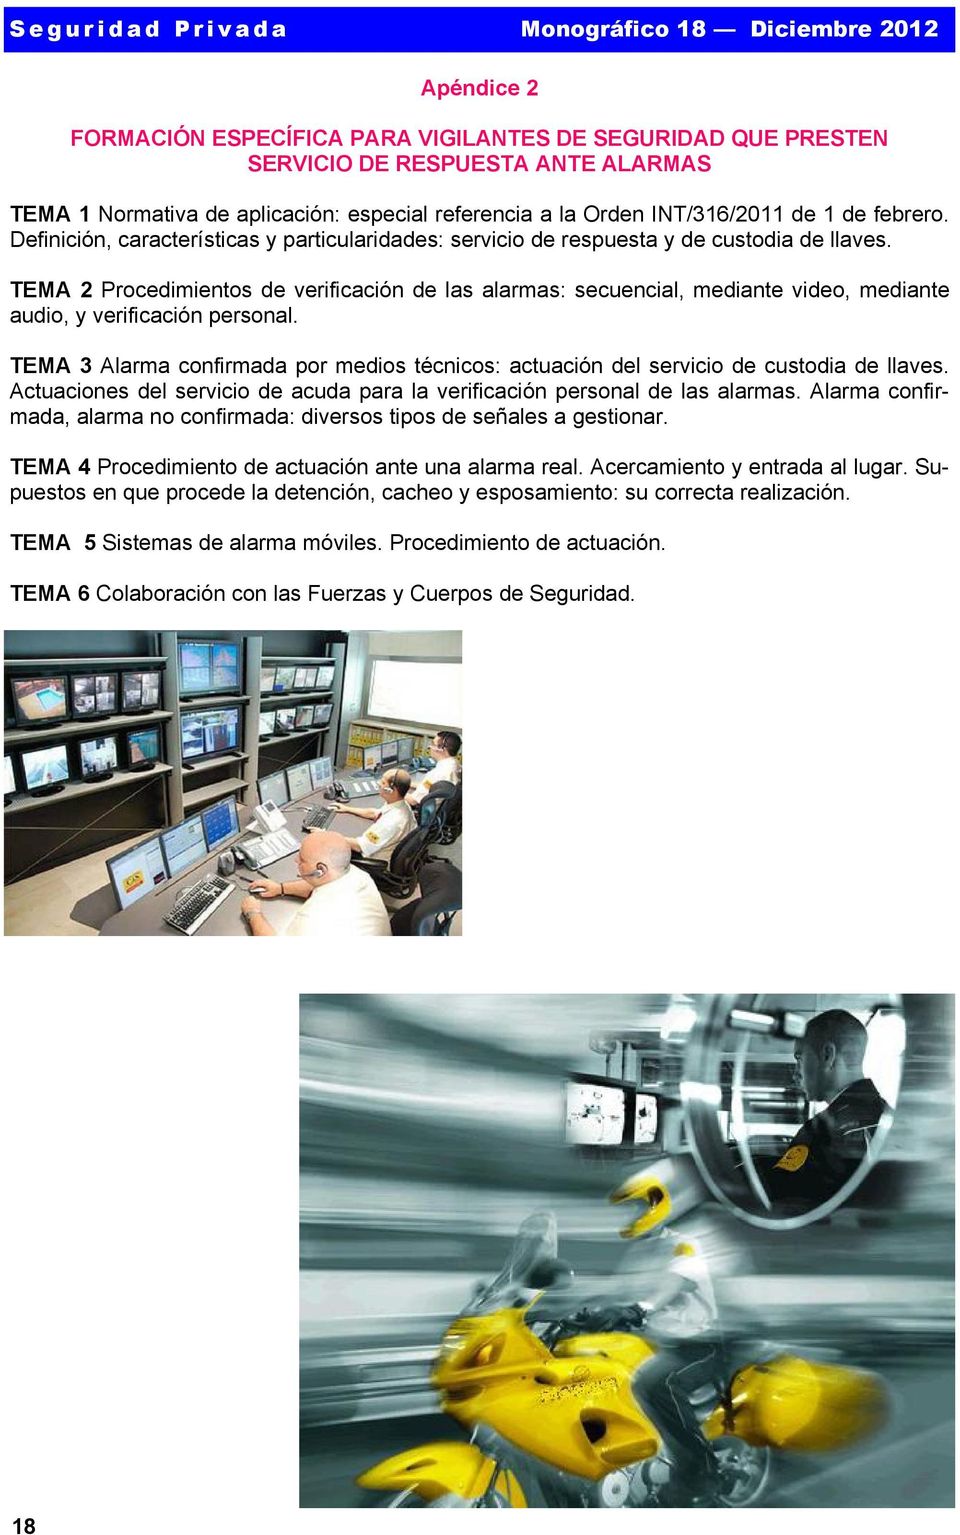 TEMA 2 Procedimientos de verificación de las alarmas: secuencial, mediante video, mediante audio, y verificación personal.